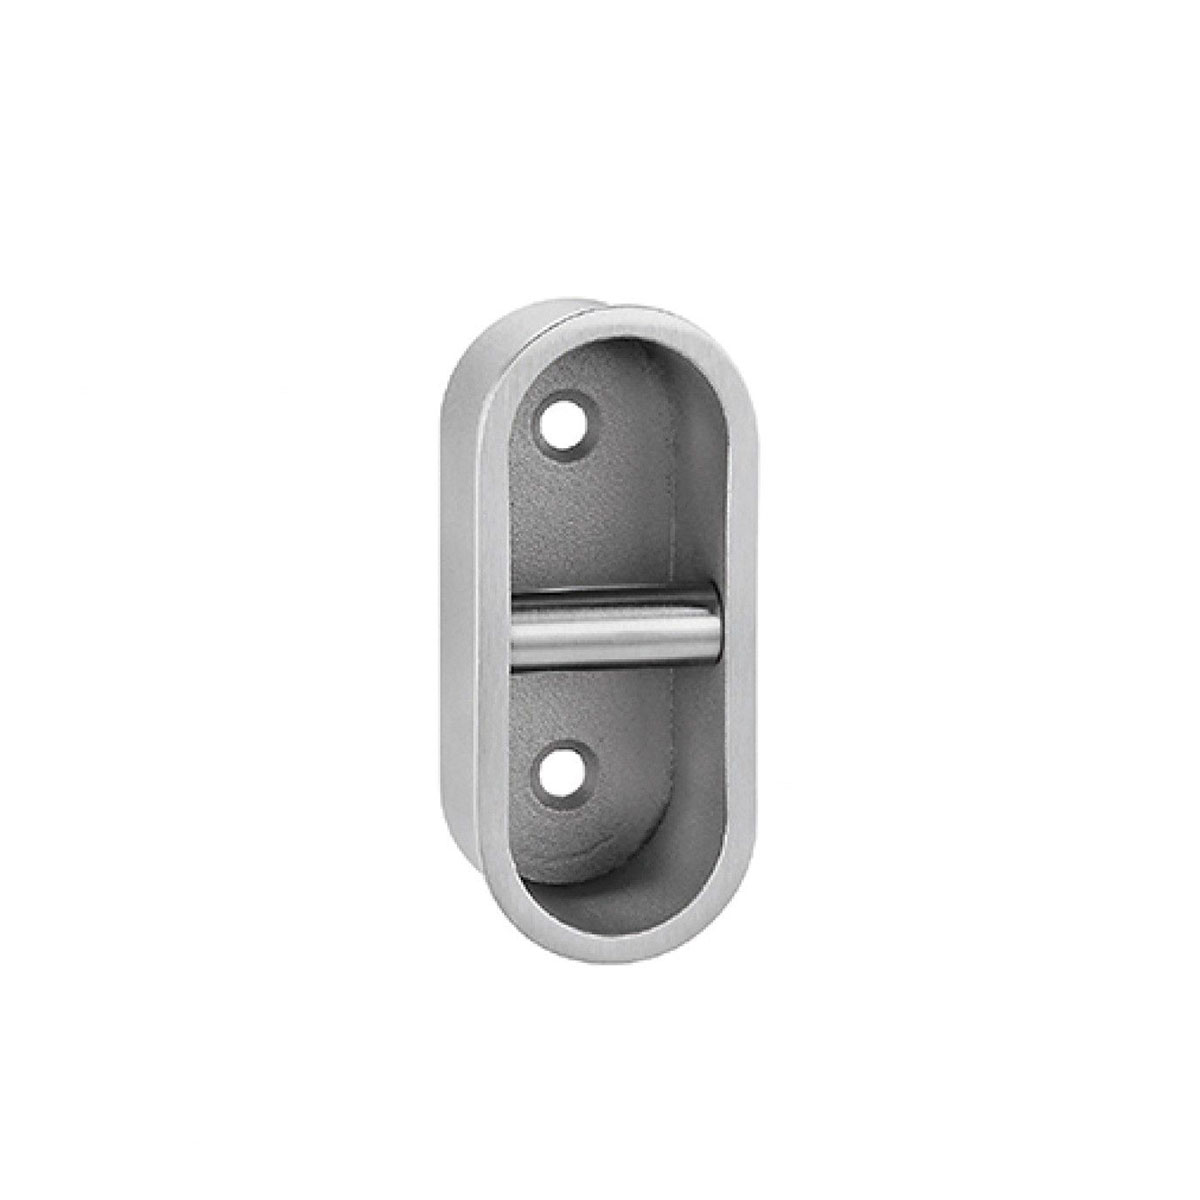 Dedal ovalado para puerta corredera fijación tornillo